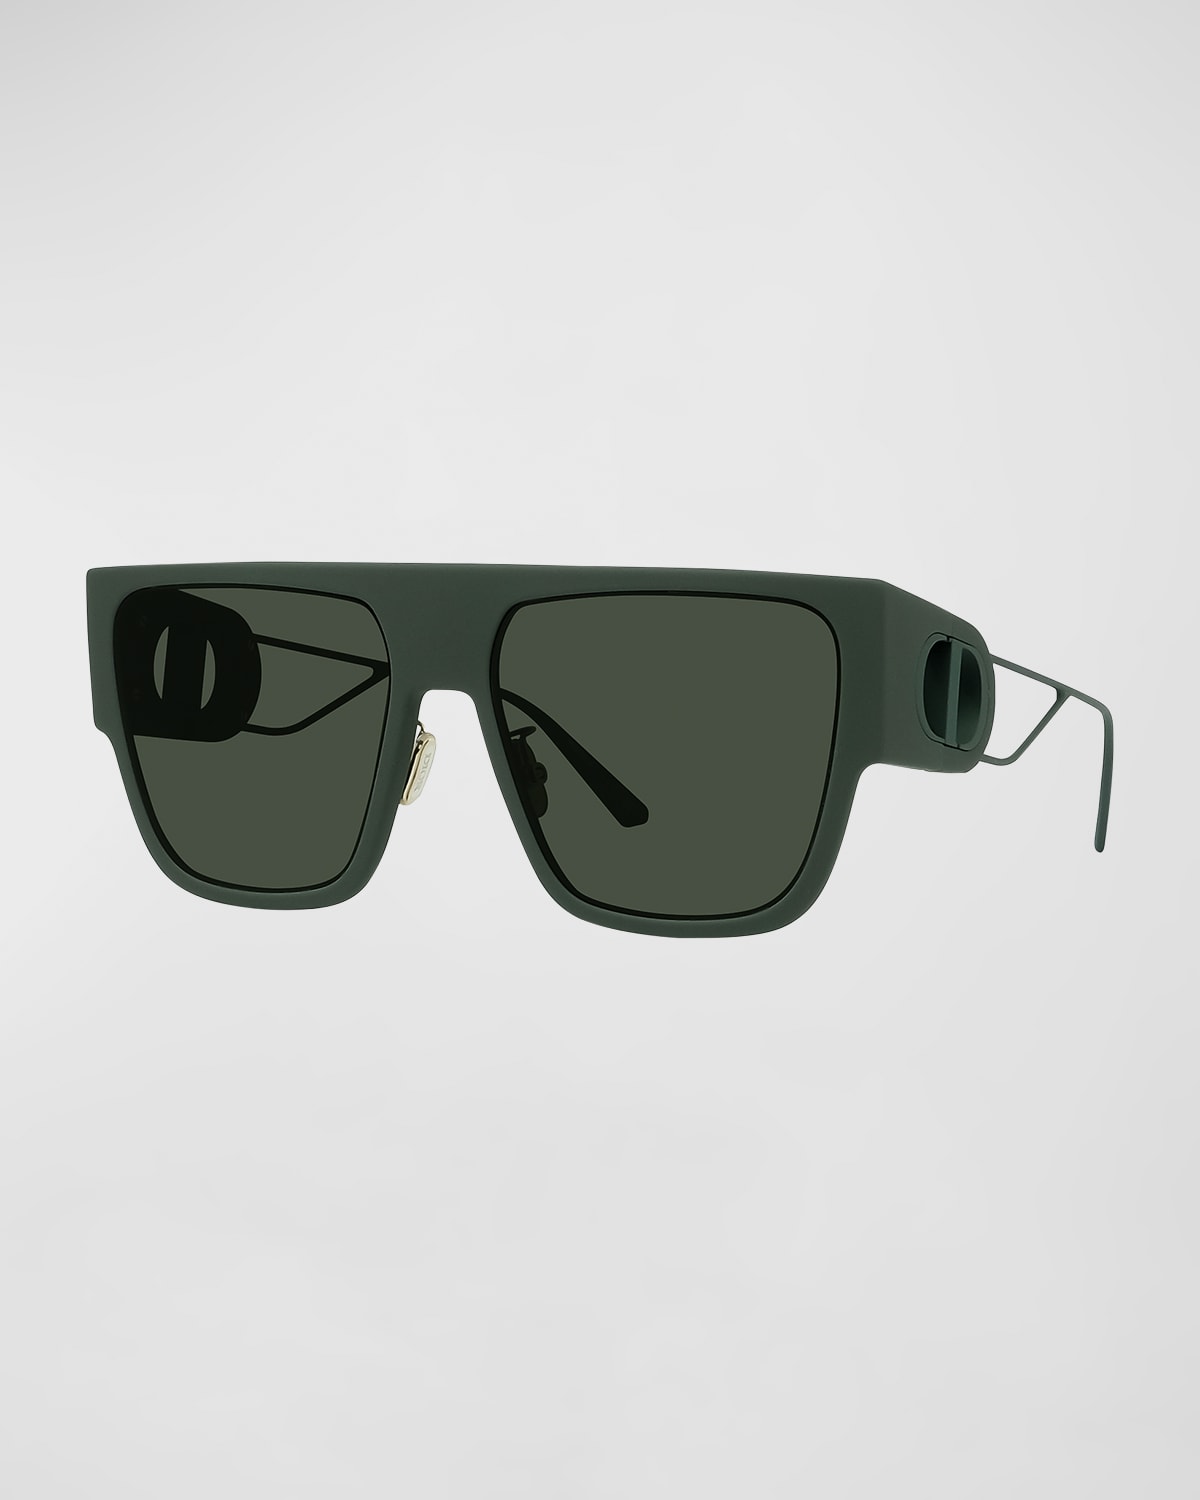 Dior 30Montaigne S3U 58mm Injection Plastic Semi-Shield Sunglasses